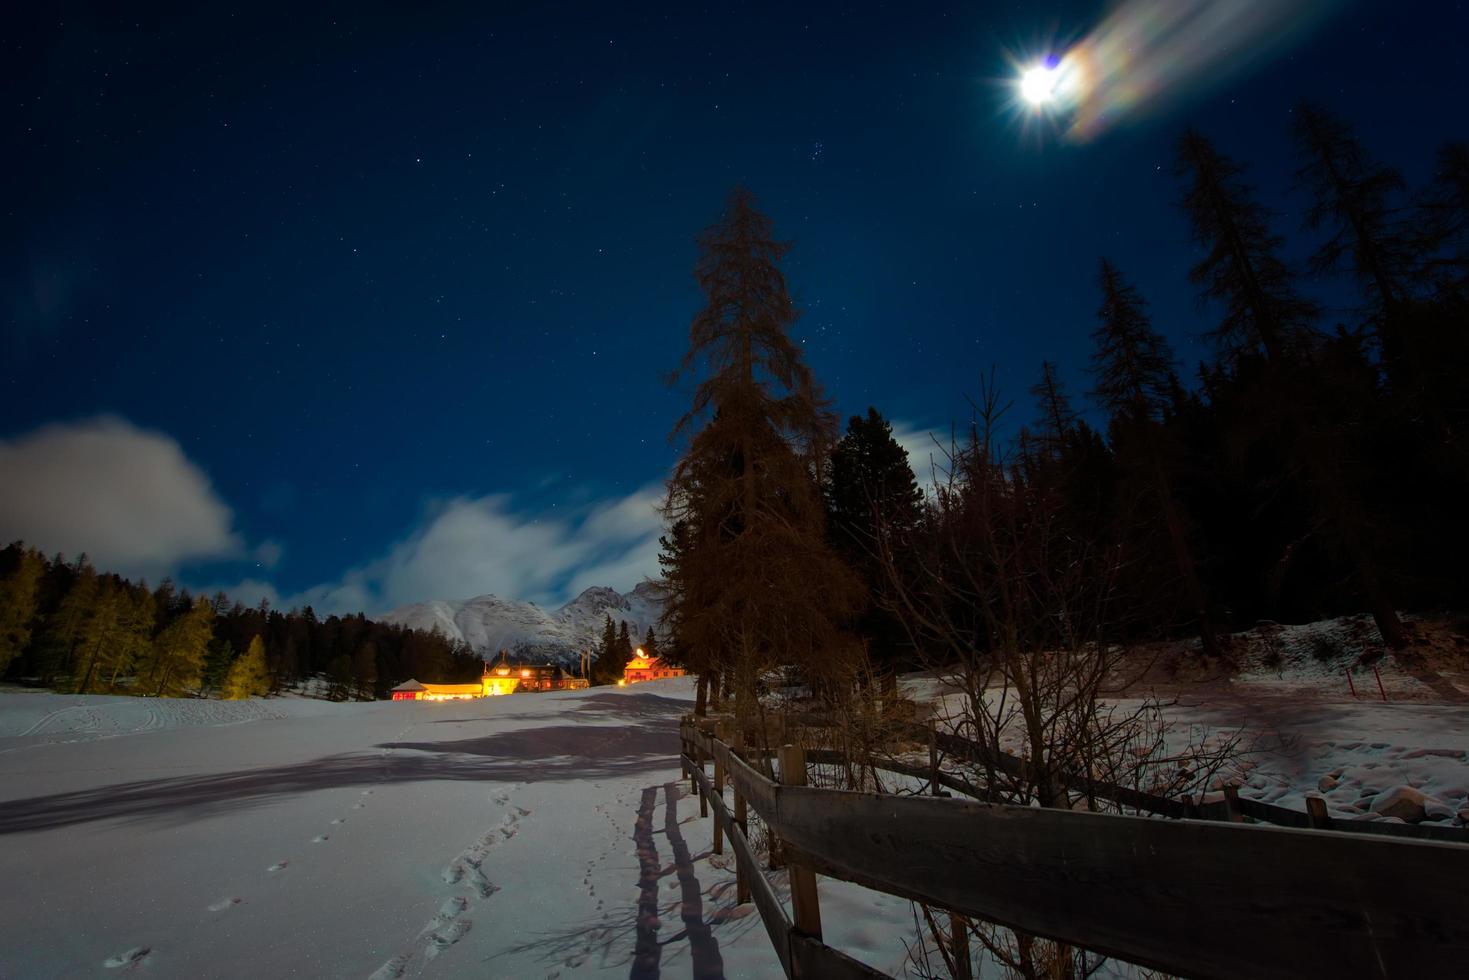 hus i snön på en stjärnklar natt med månen foto